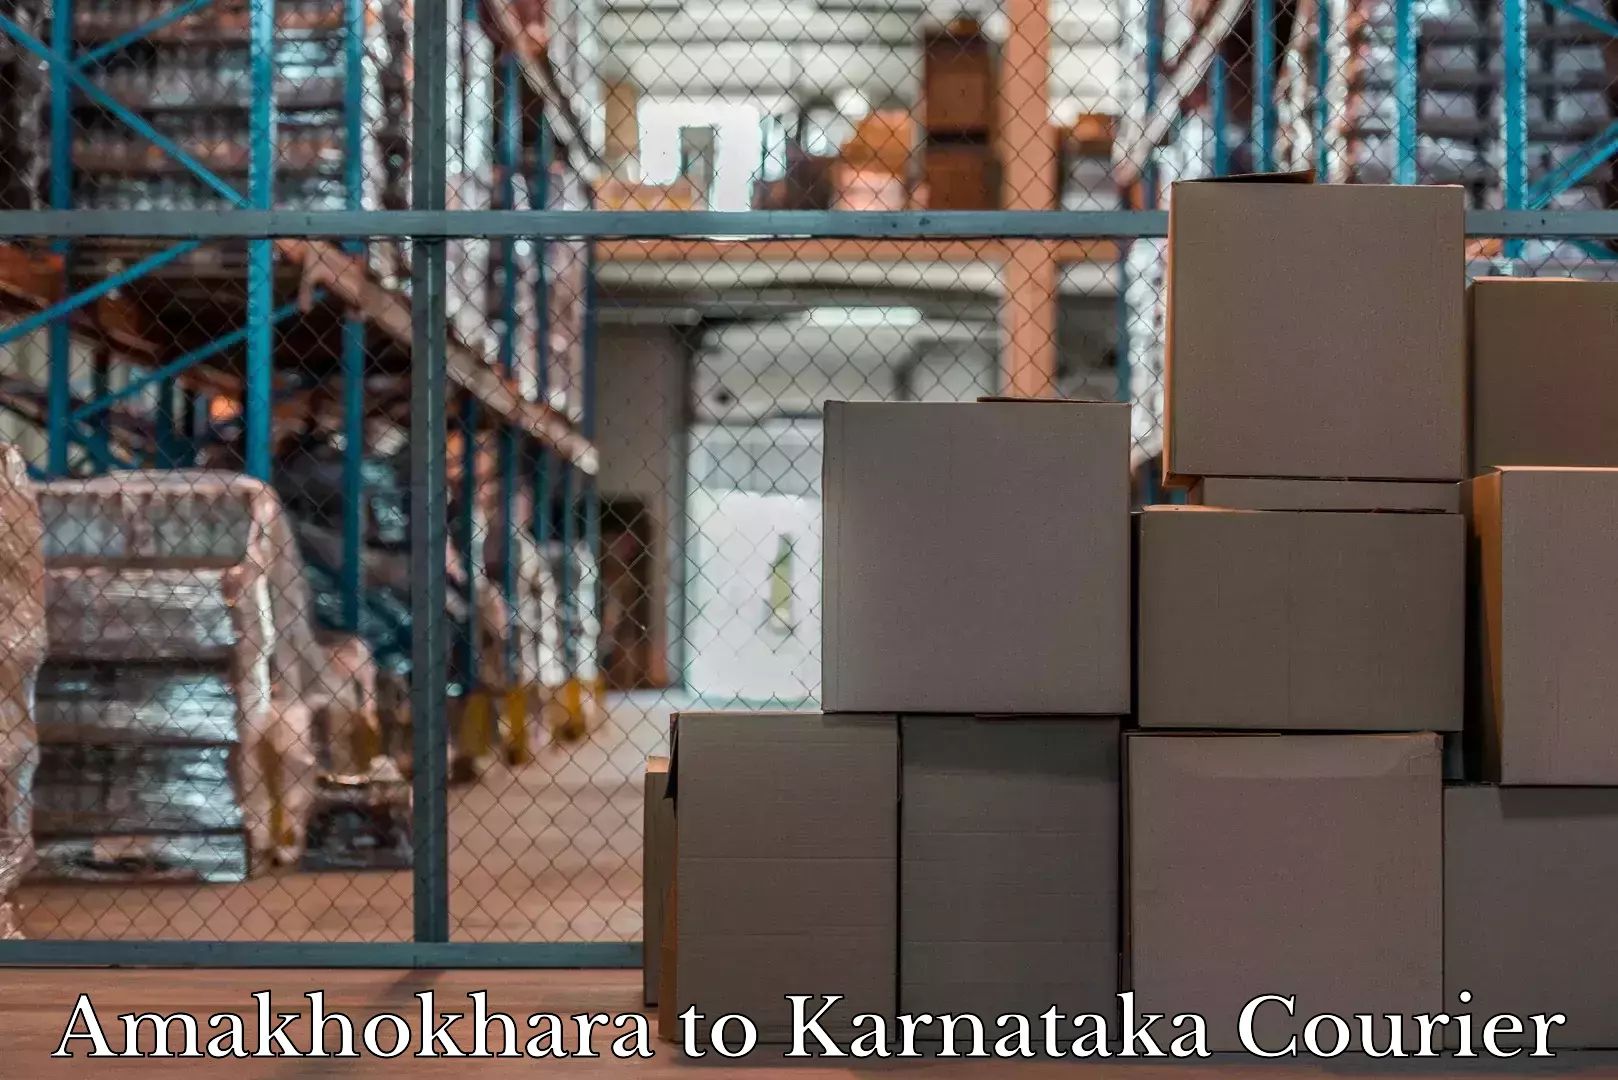 Luggage transport company Amakhokhara to Kanjarakatte